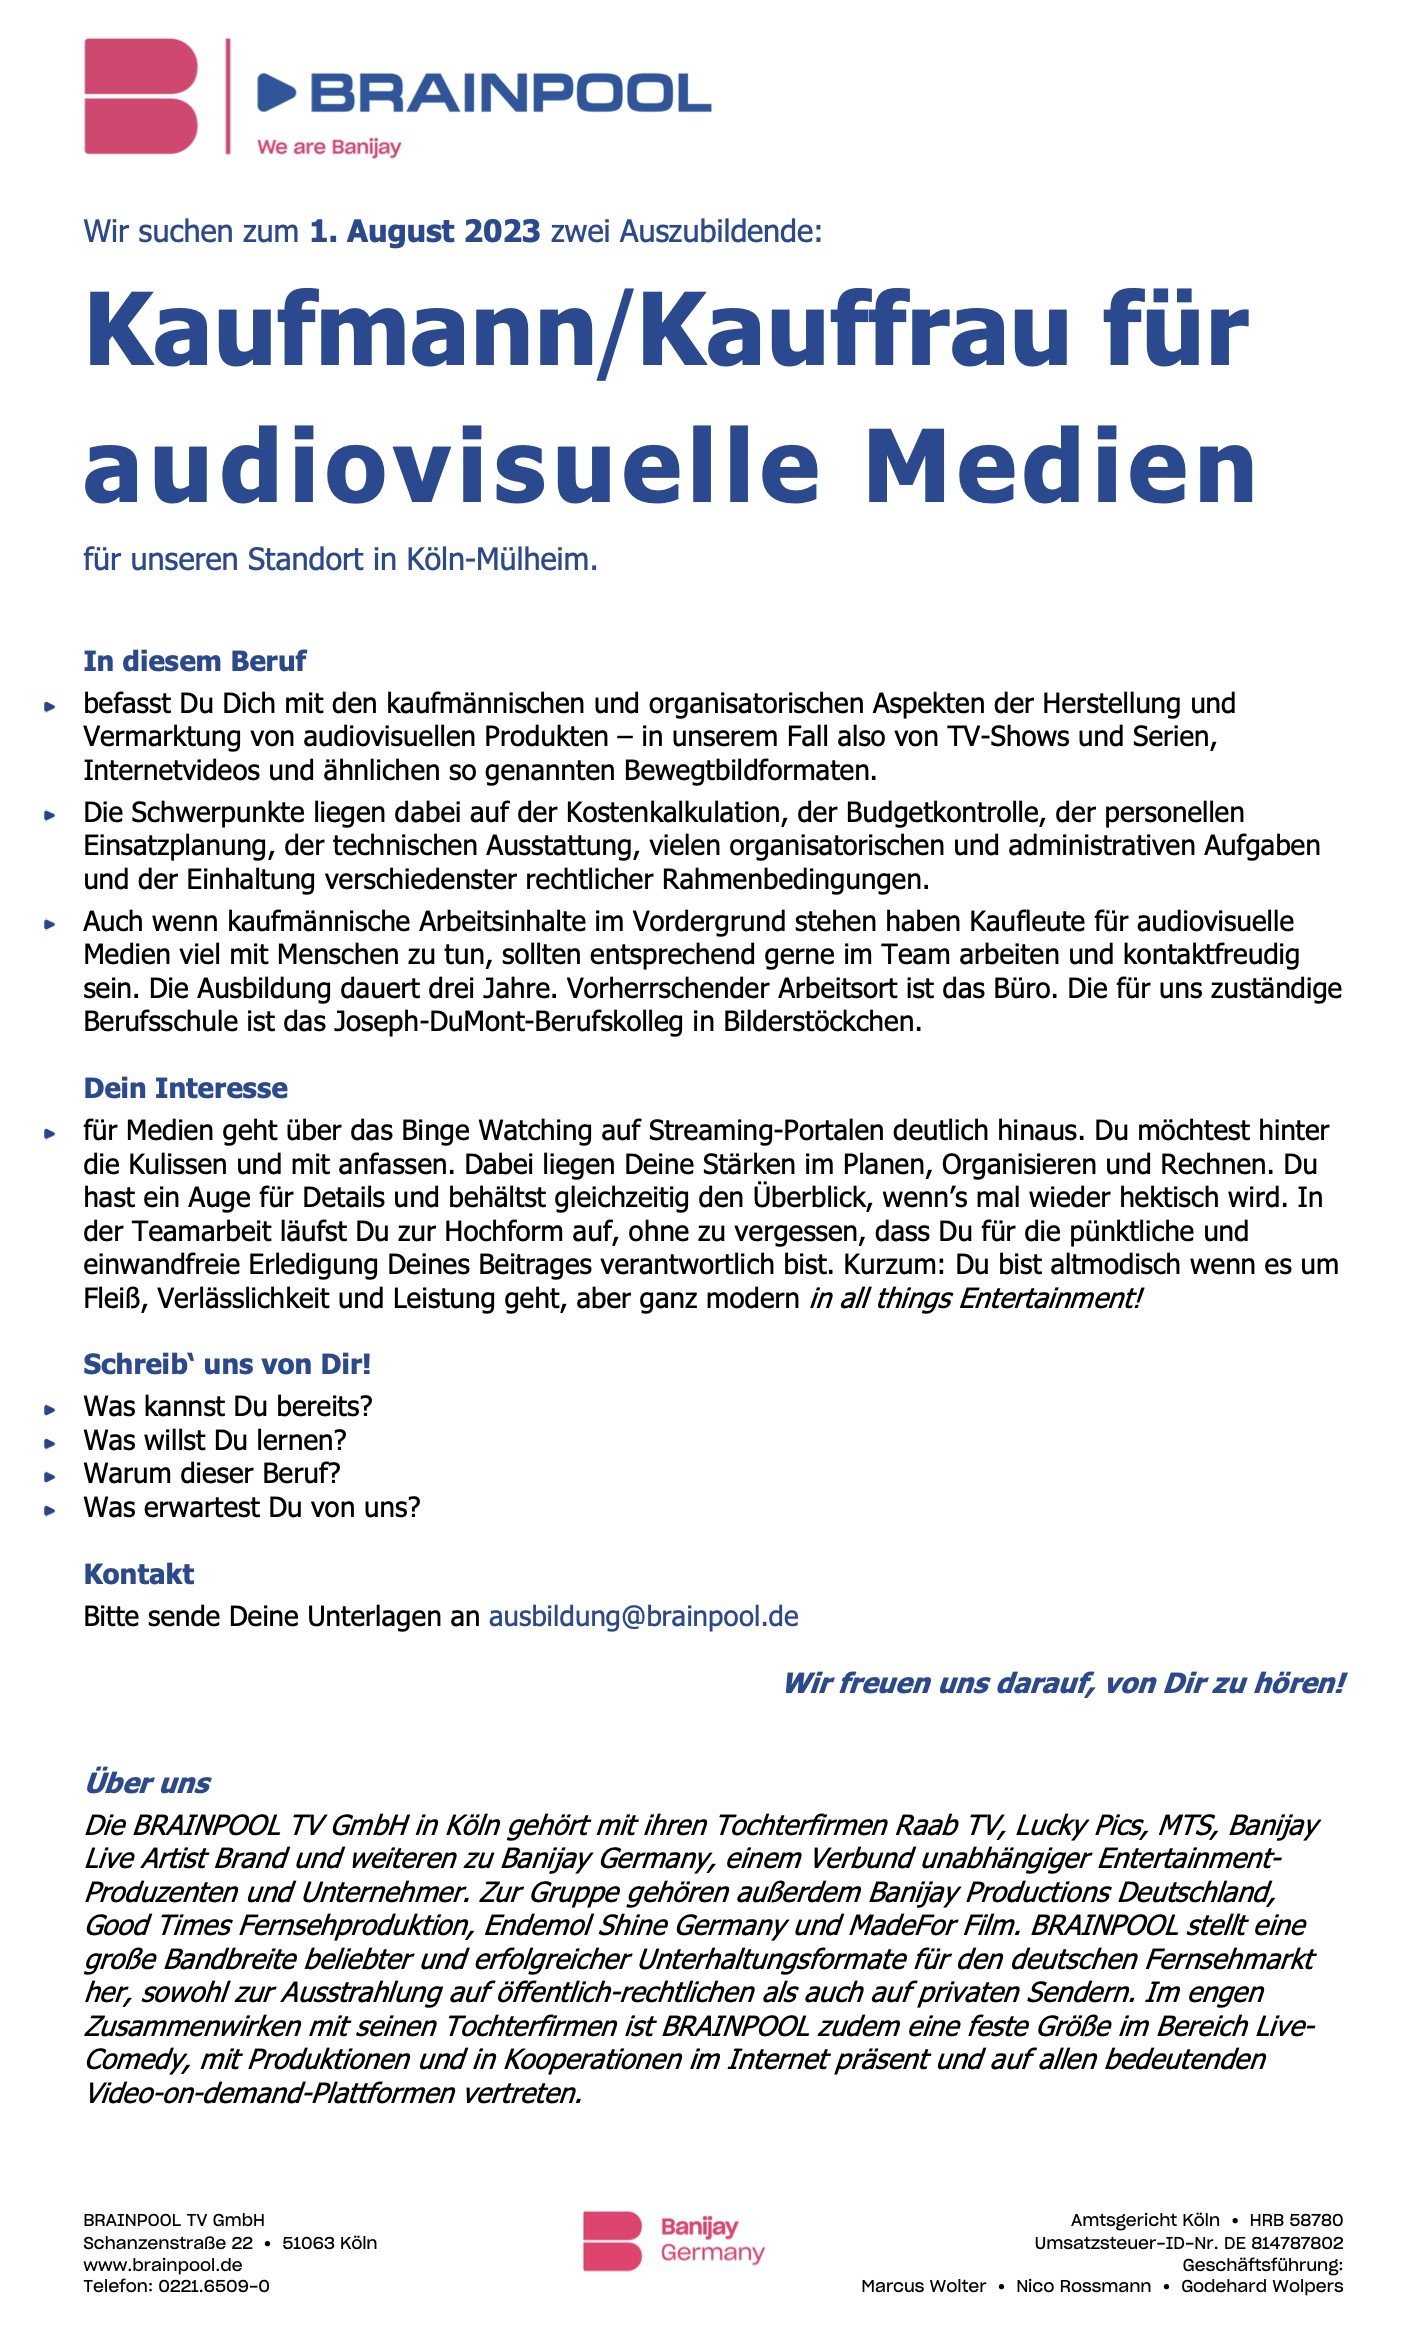 Kaufmann/Kauffrau für audiovisuelle Medien